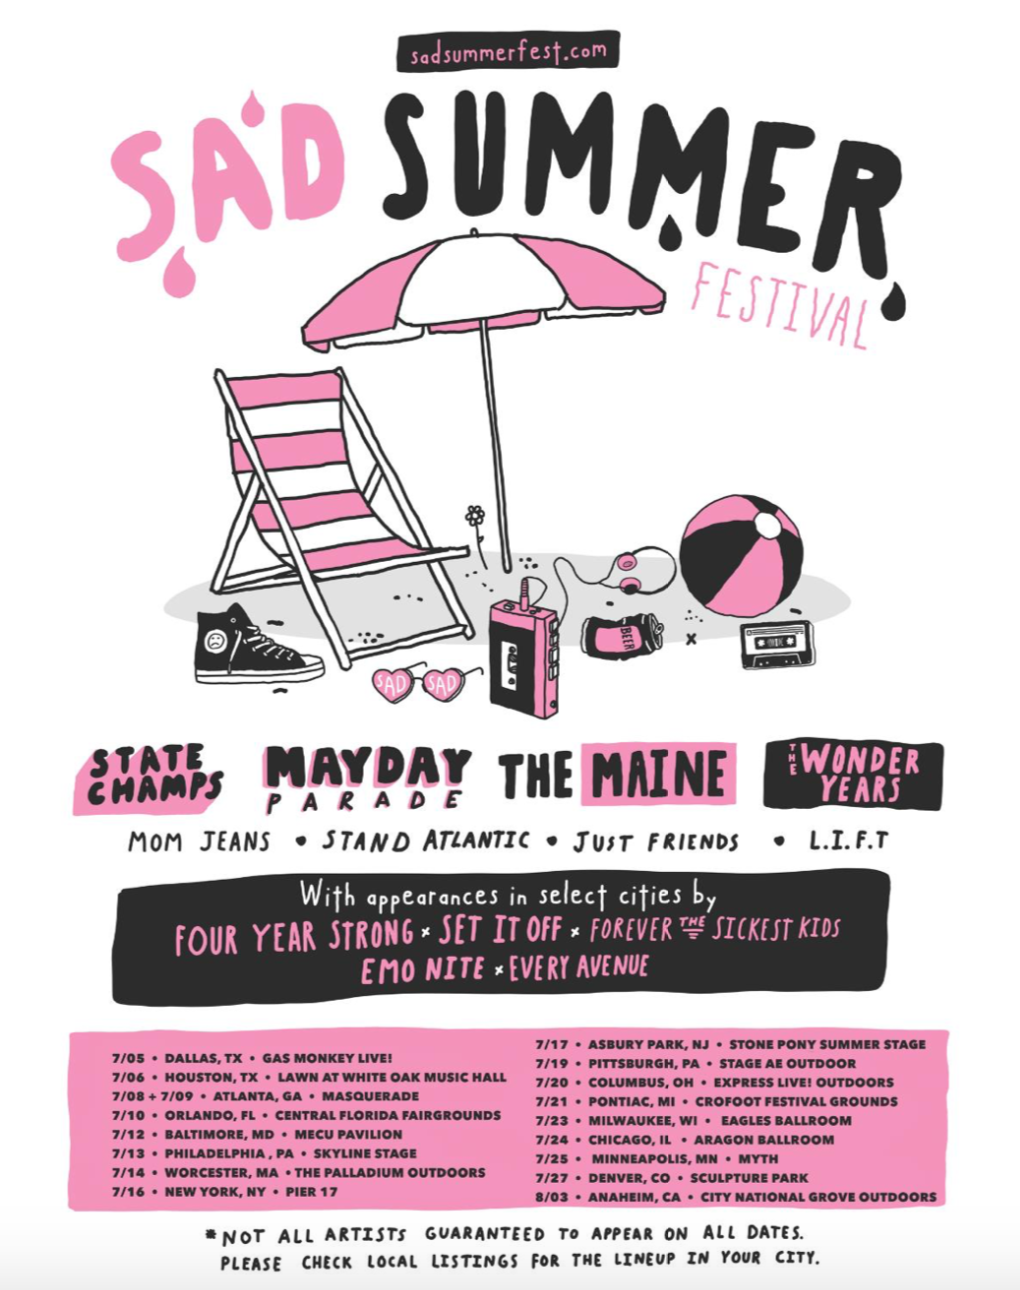 sad summer fest tour dates